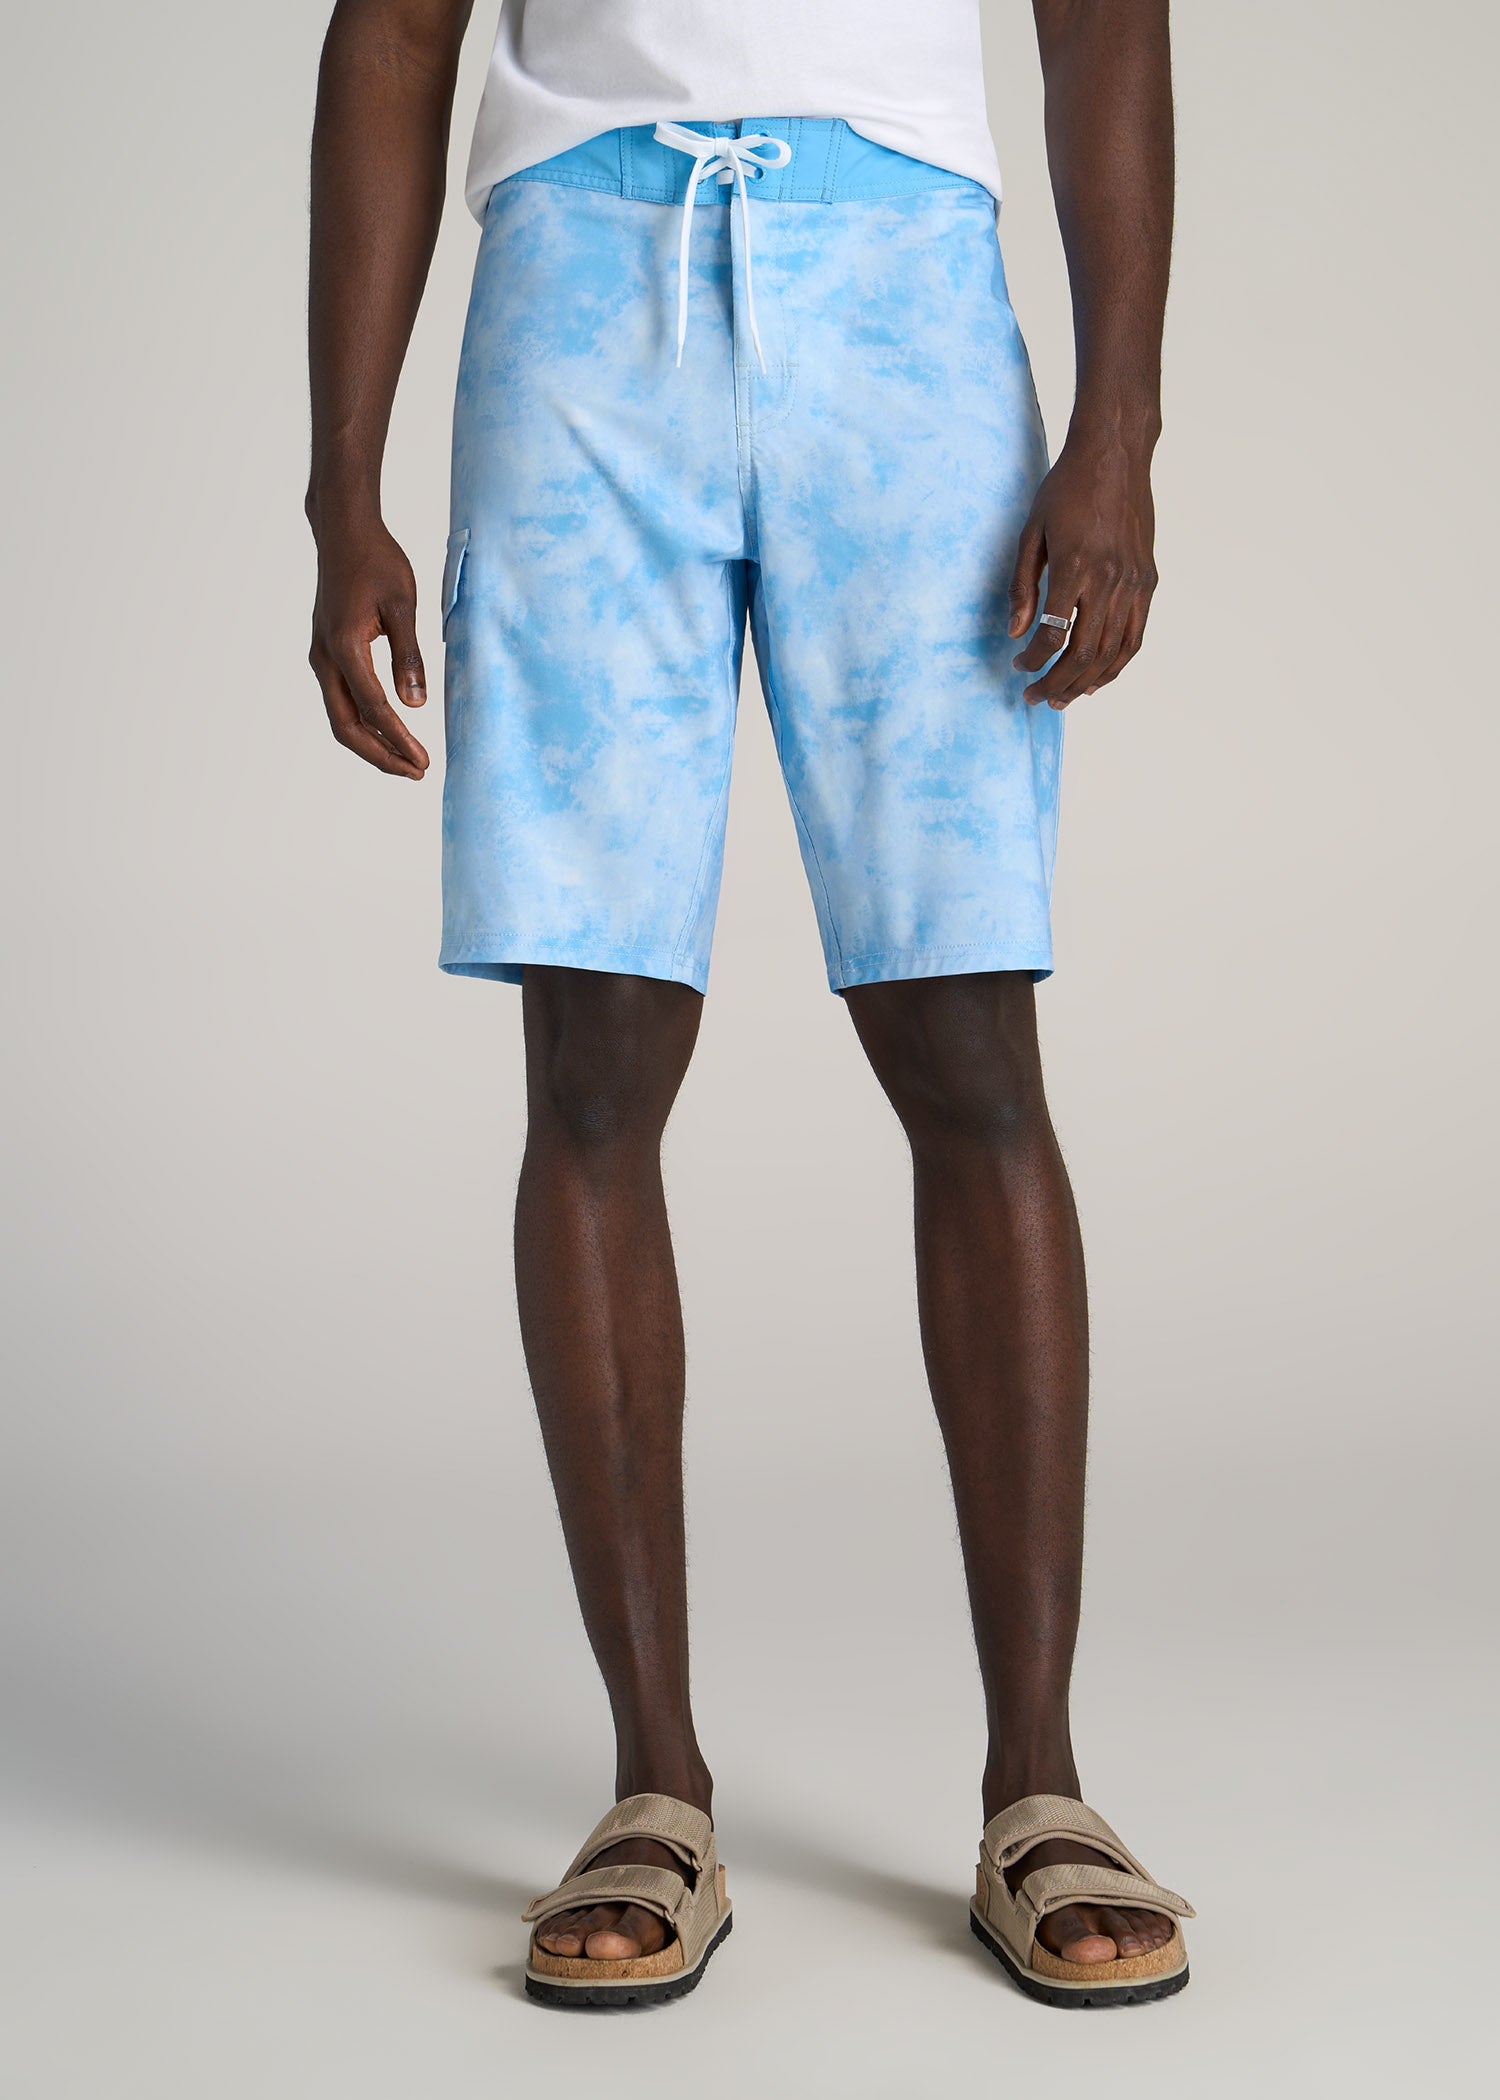 Tall Board Shorts for Men in Light Blue Tie Dye 38 / Tall / Light Blue Tie Dye